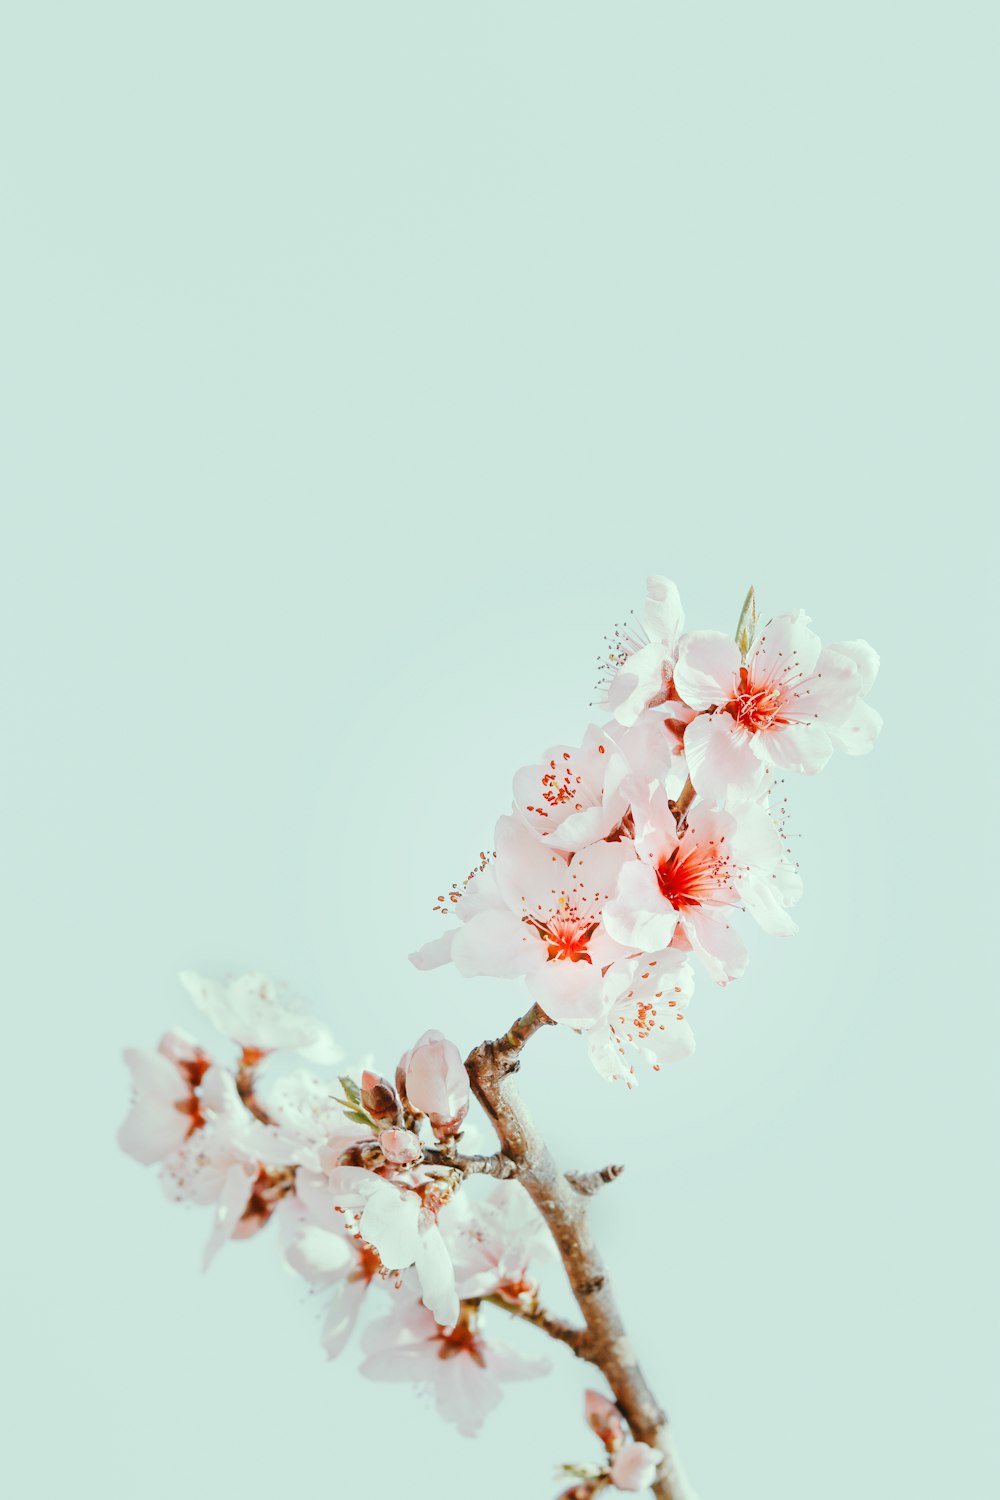 Fondos de pantalla de flor de cerezo: Descarga HD gratuita [500+ HQ] |  Unsplash